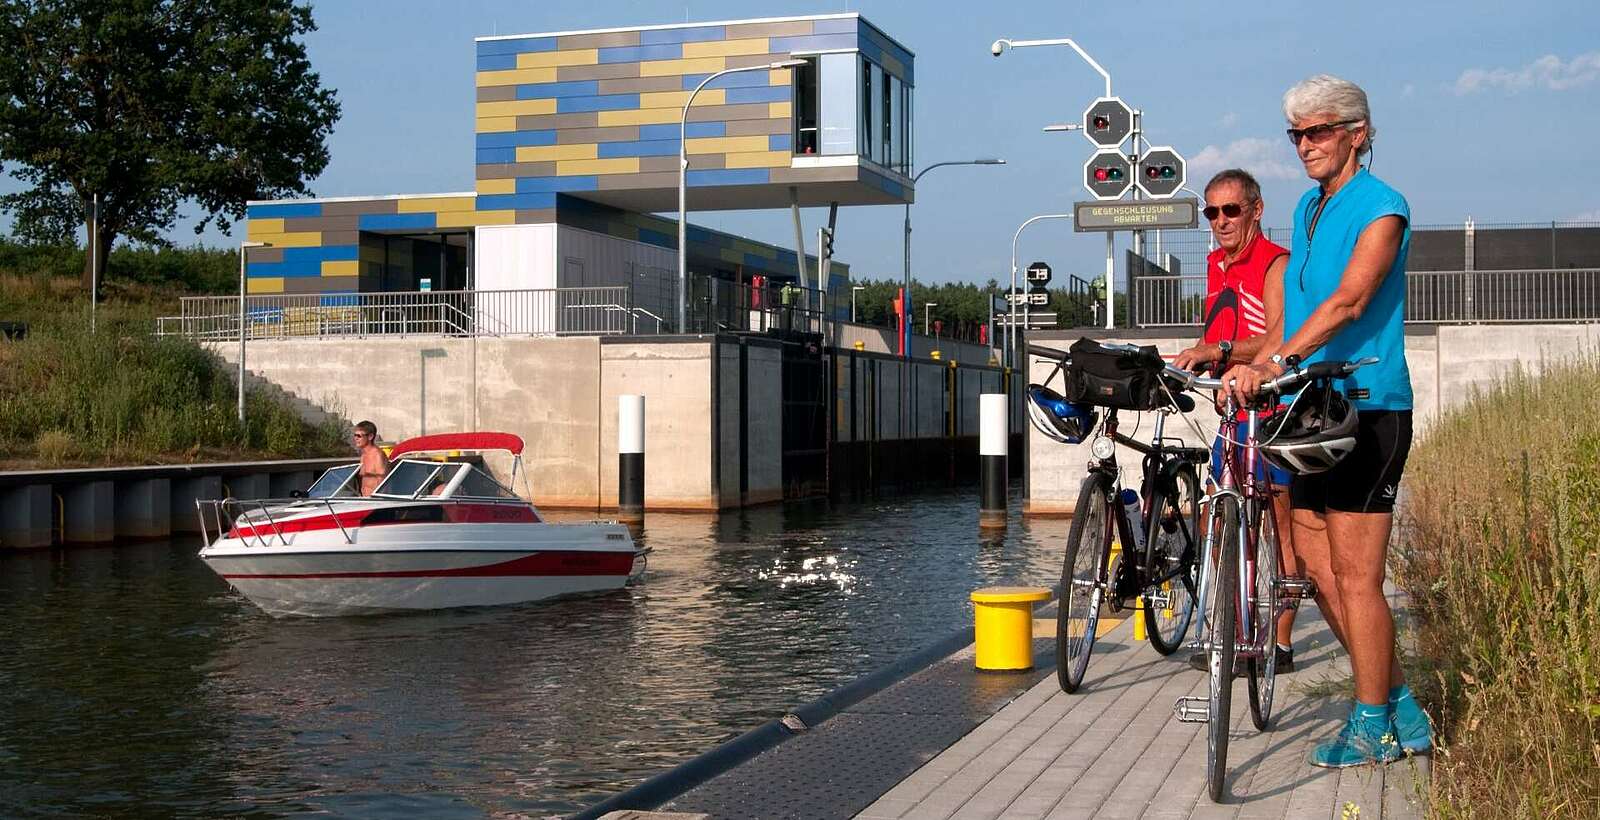 Radfahrer am Koschener Kanal im Lausitzer Seenland,
        
    

        Foto: Tourismusverband Lausitzer Seenland e.V./Nada Quenzel